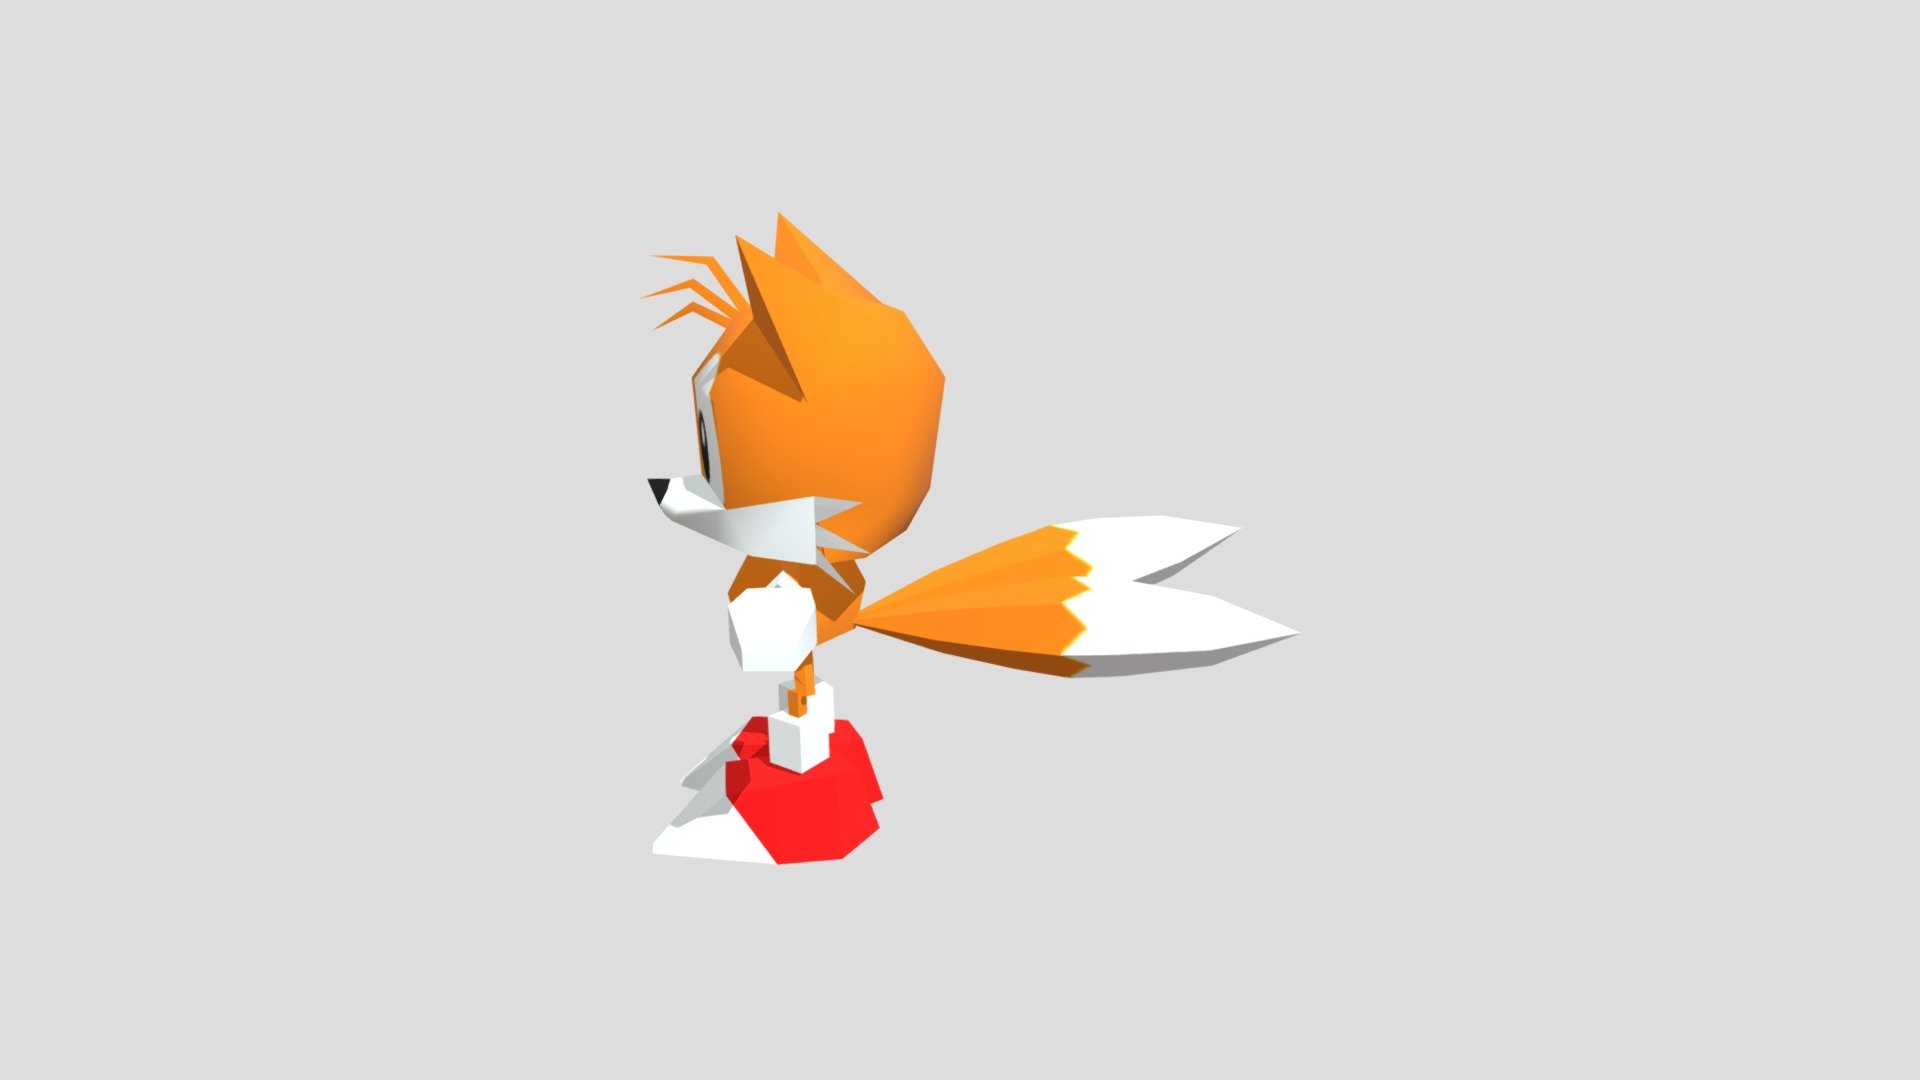 Tails 3D models - Sketchfab